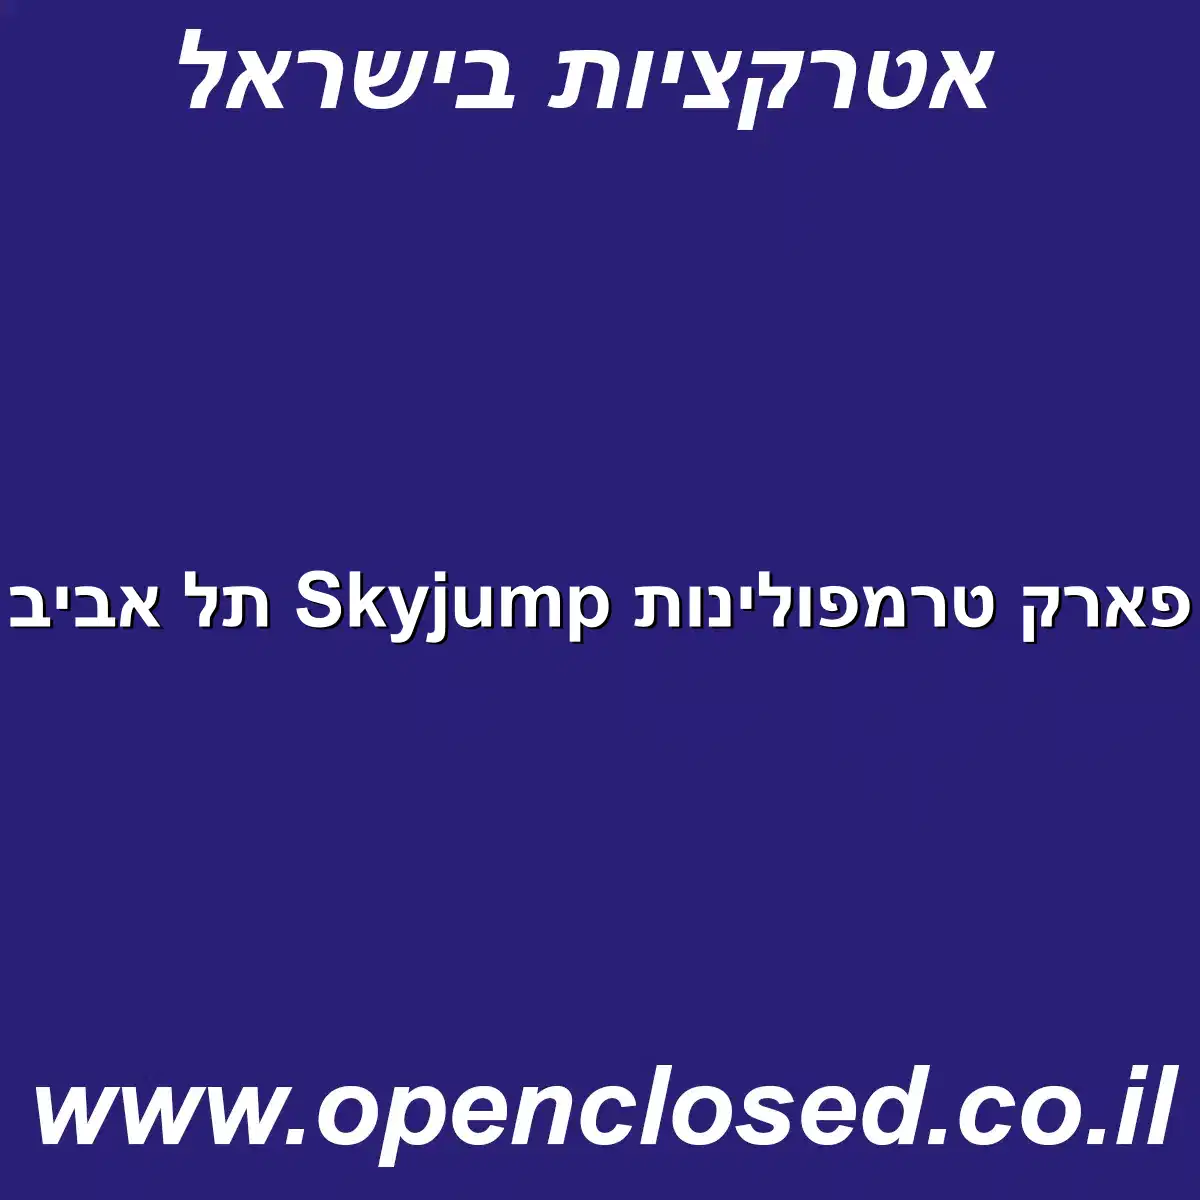 פארק טרמפולינות Skyjump תל אביב